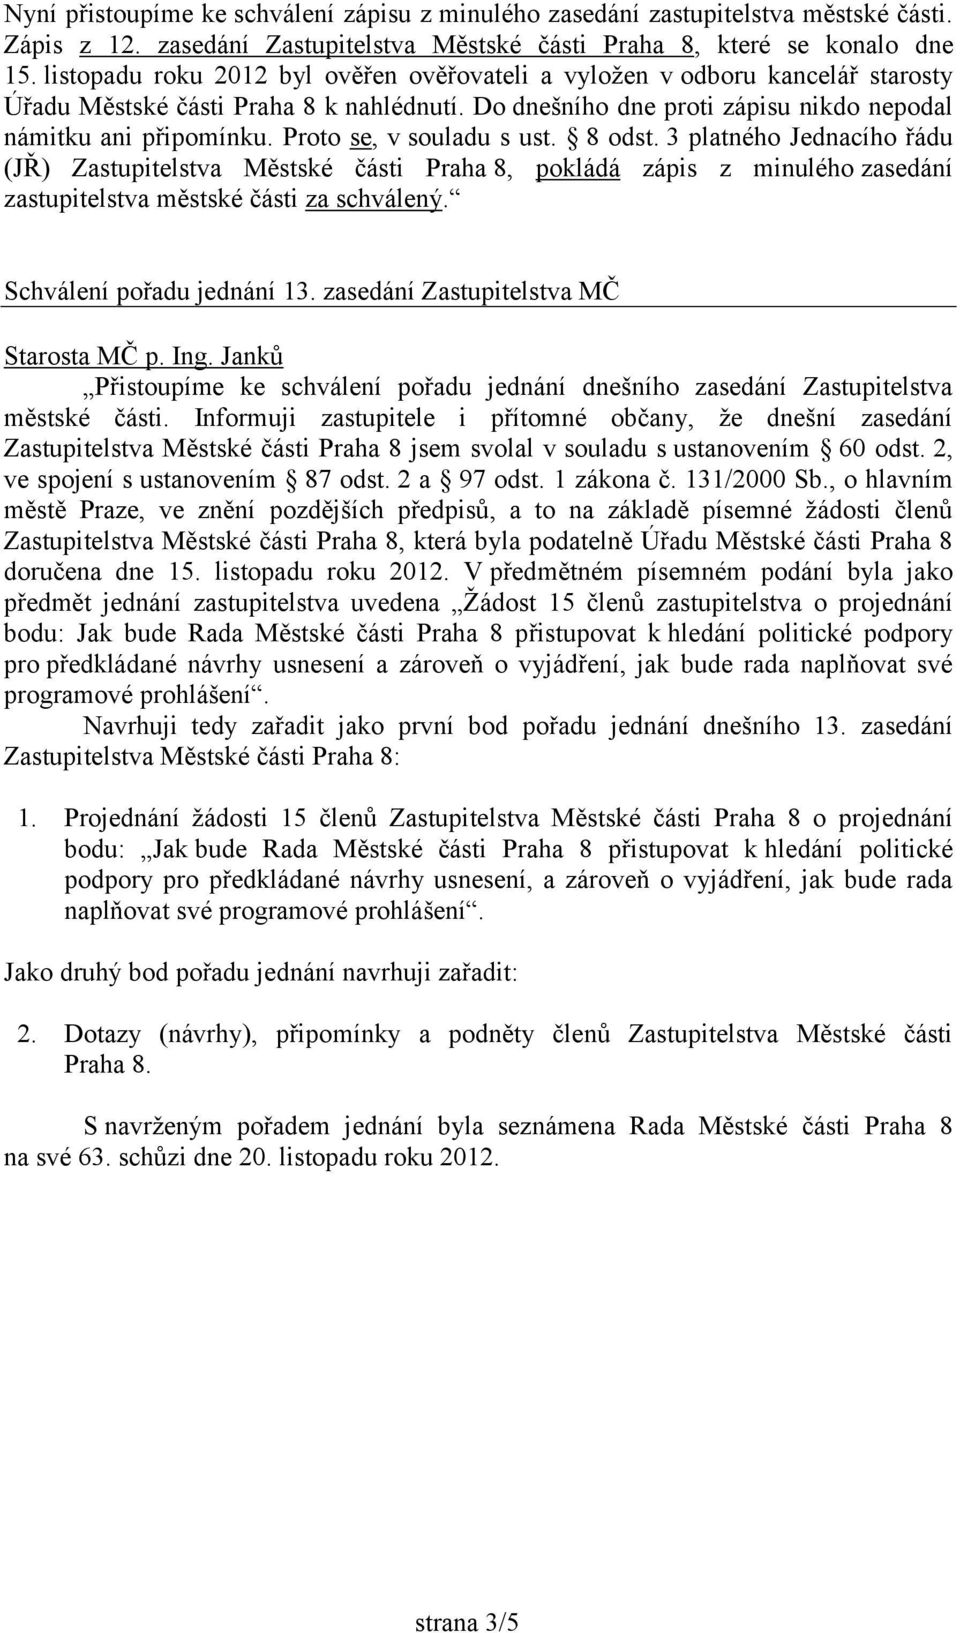 Proto se, v souladu s ust. 8 odst. 3 platného Jednacího řádu (JŘ) Zastupitelstva Městské části Praha 8, pokládá zápis z minulého zasedání zastupitelstva městské části za schválený.